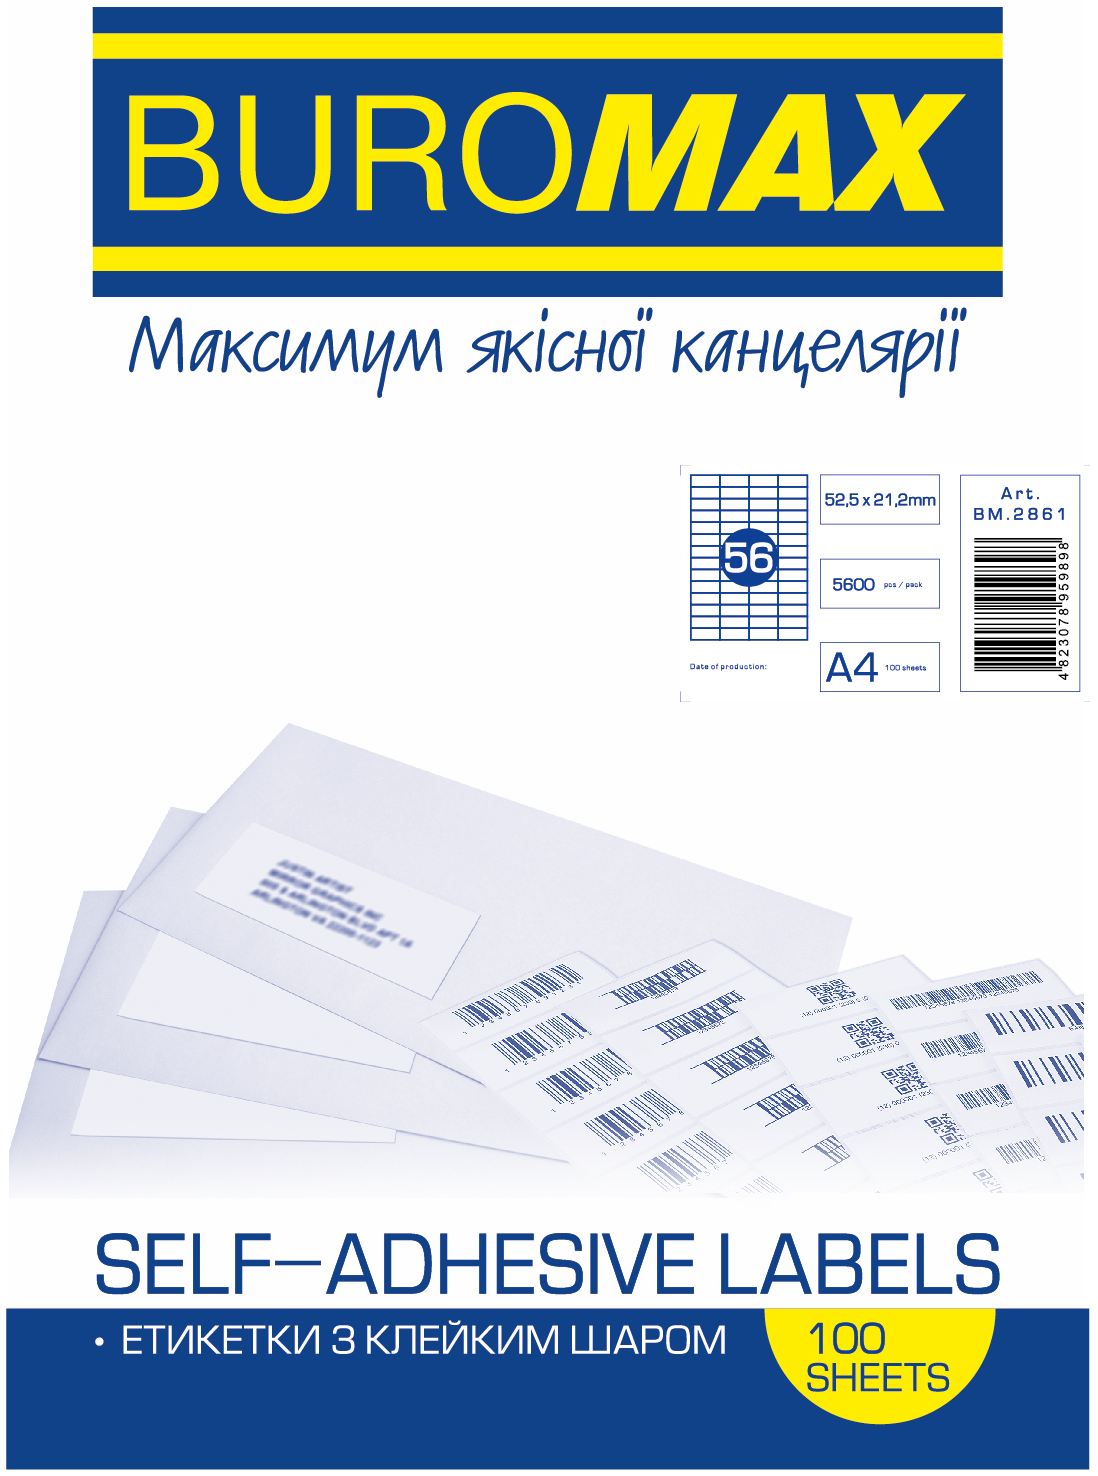 Етикетка самоклеюча Buromax 56 поділів 52,5*21,2мм А4 (100л) матова | Купити в інтернет магазині